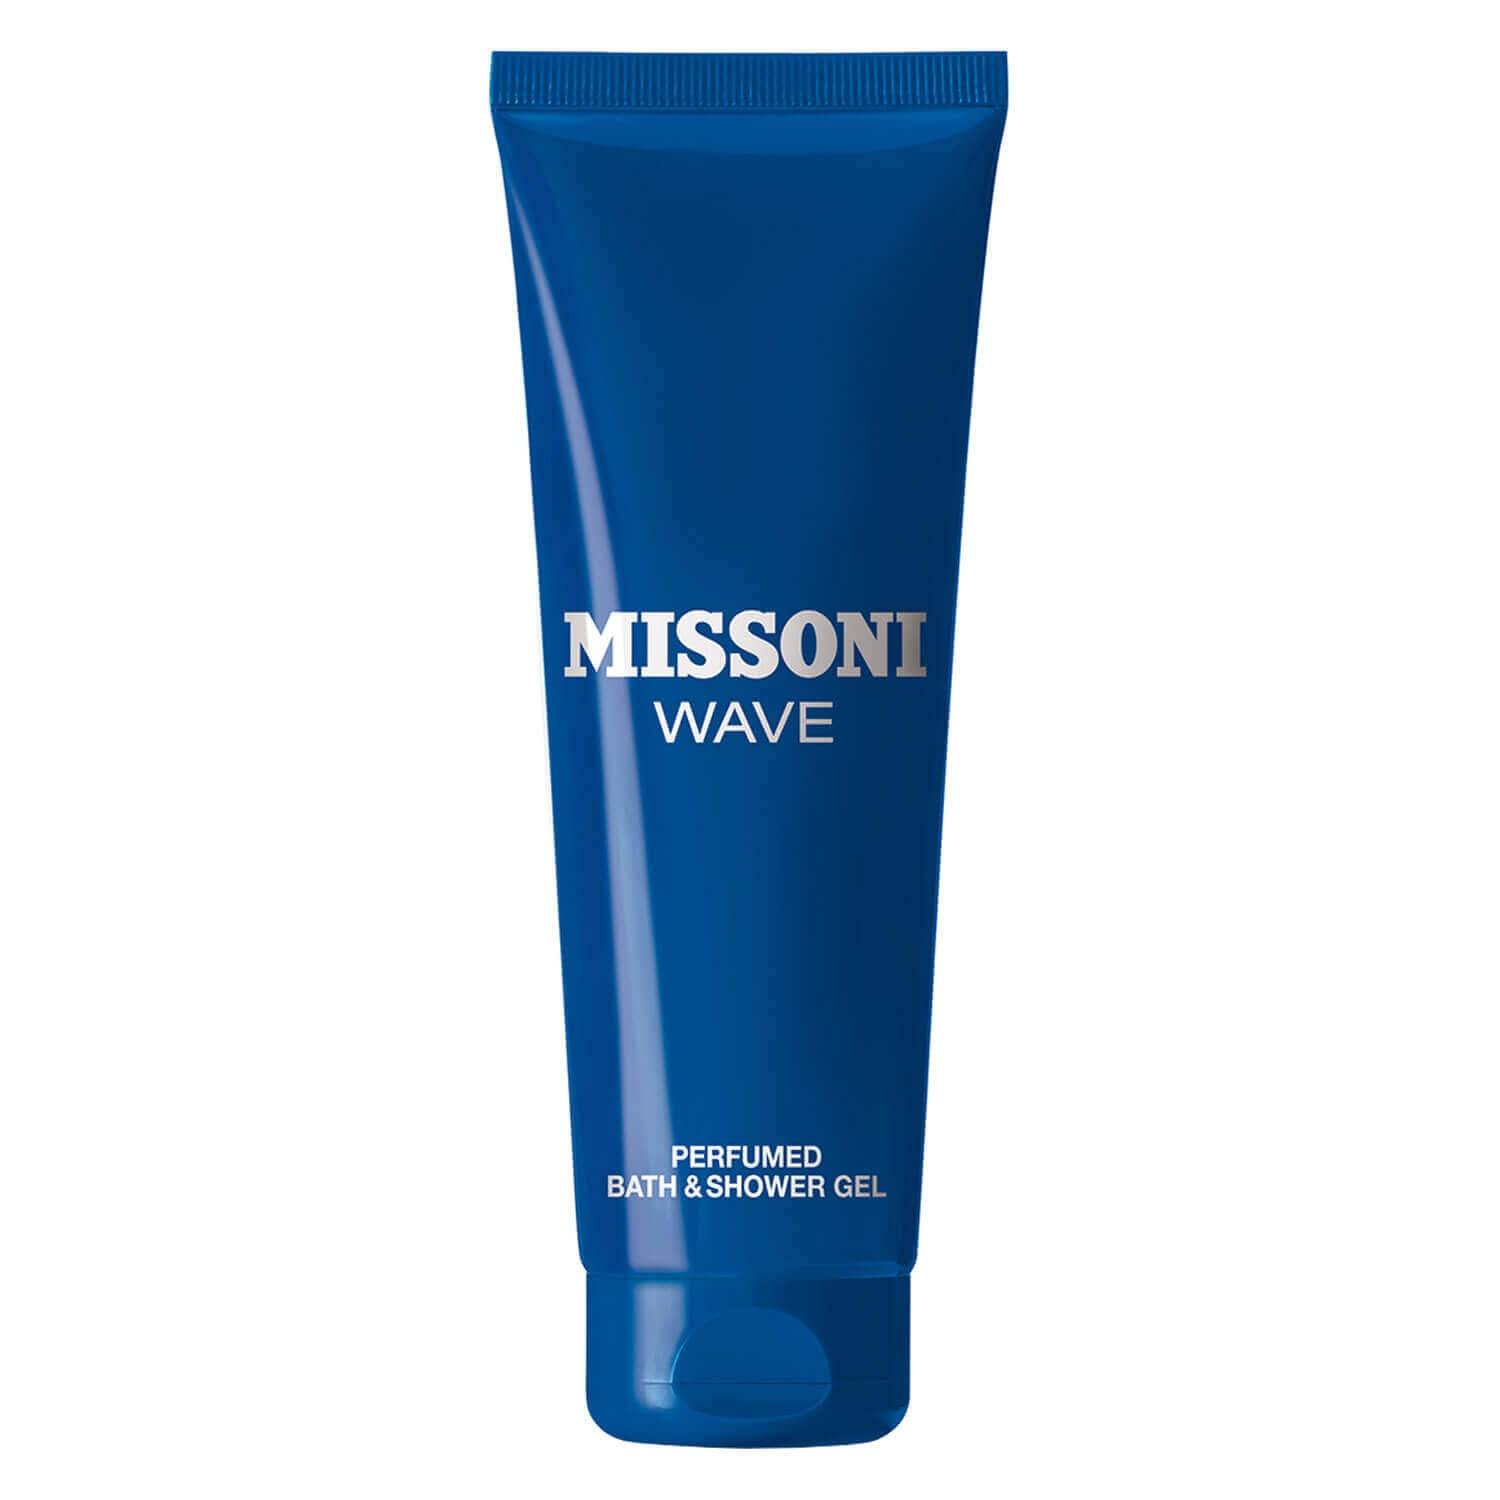 Produktbild von Missoni Wave - Perfumed Bath & Shower Gel